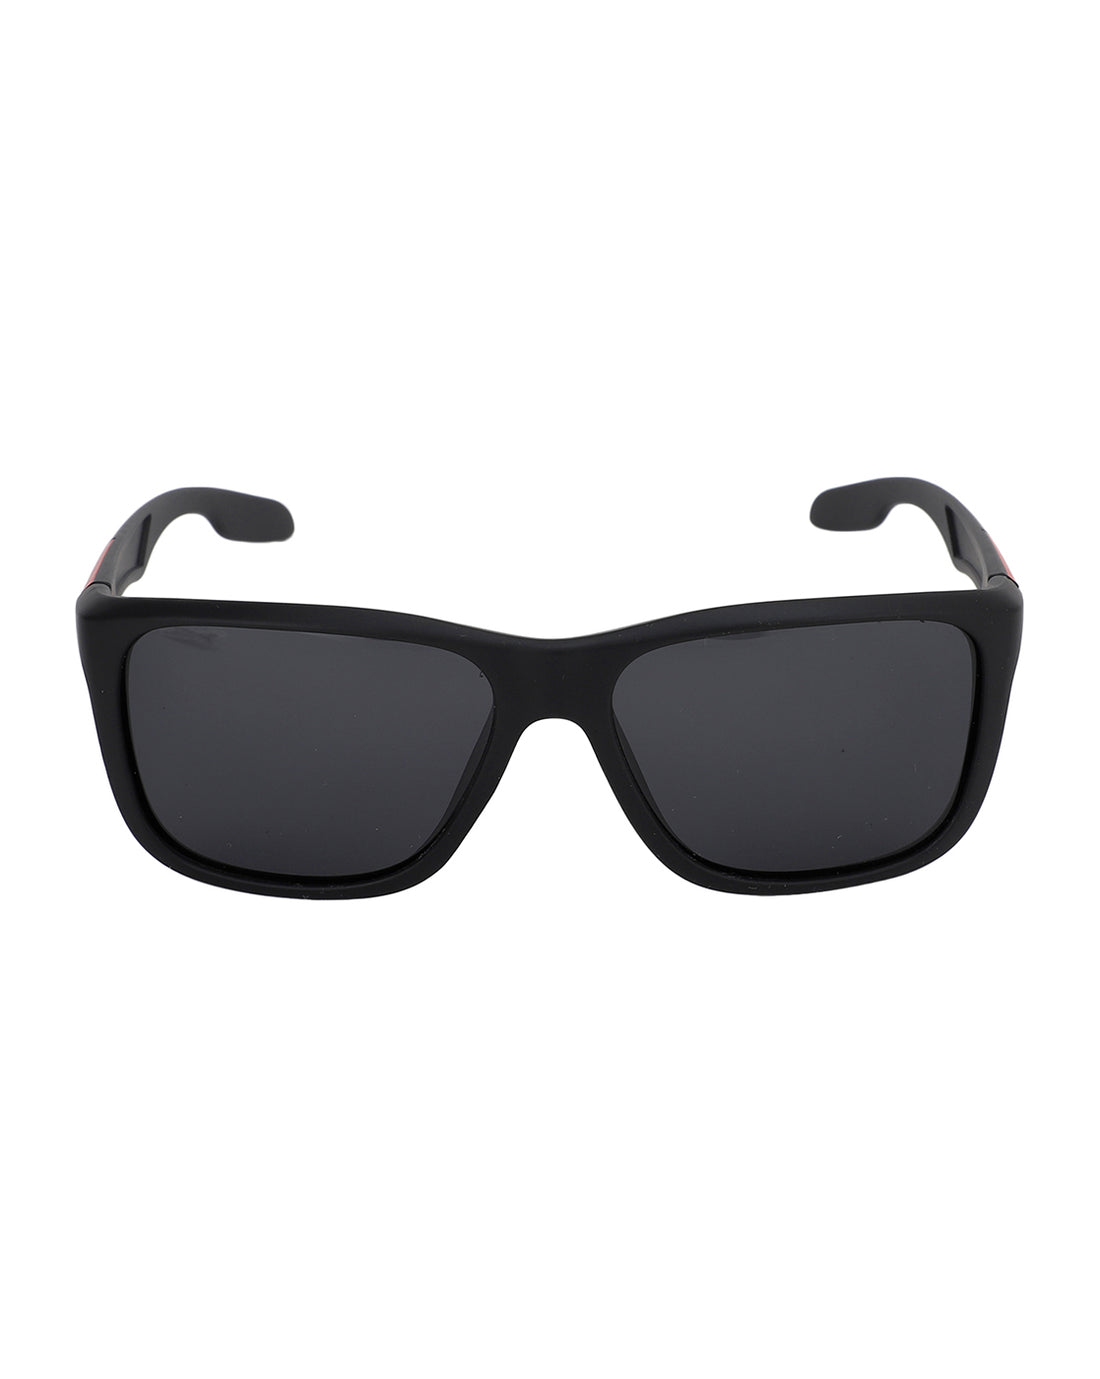 Carlton London Square UV Protected Rectangle Sunglasses For Men